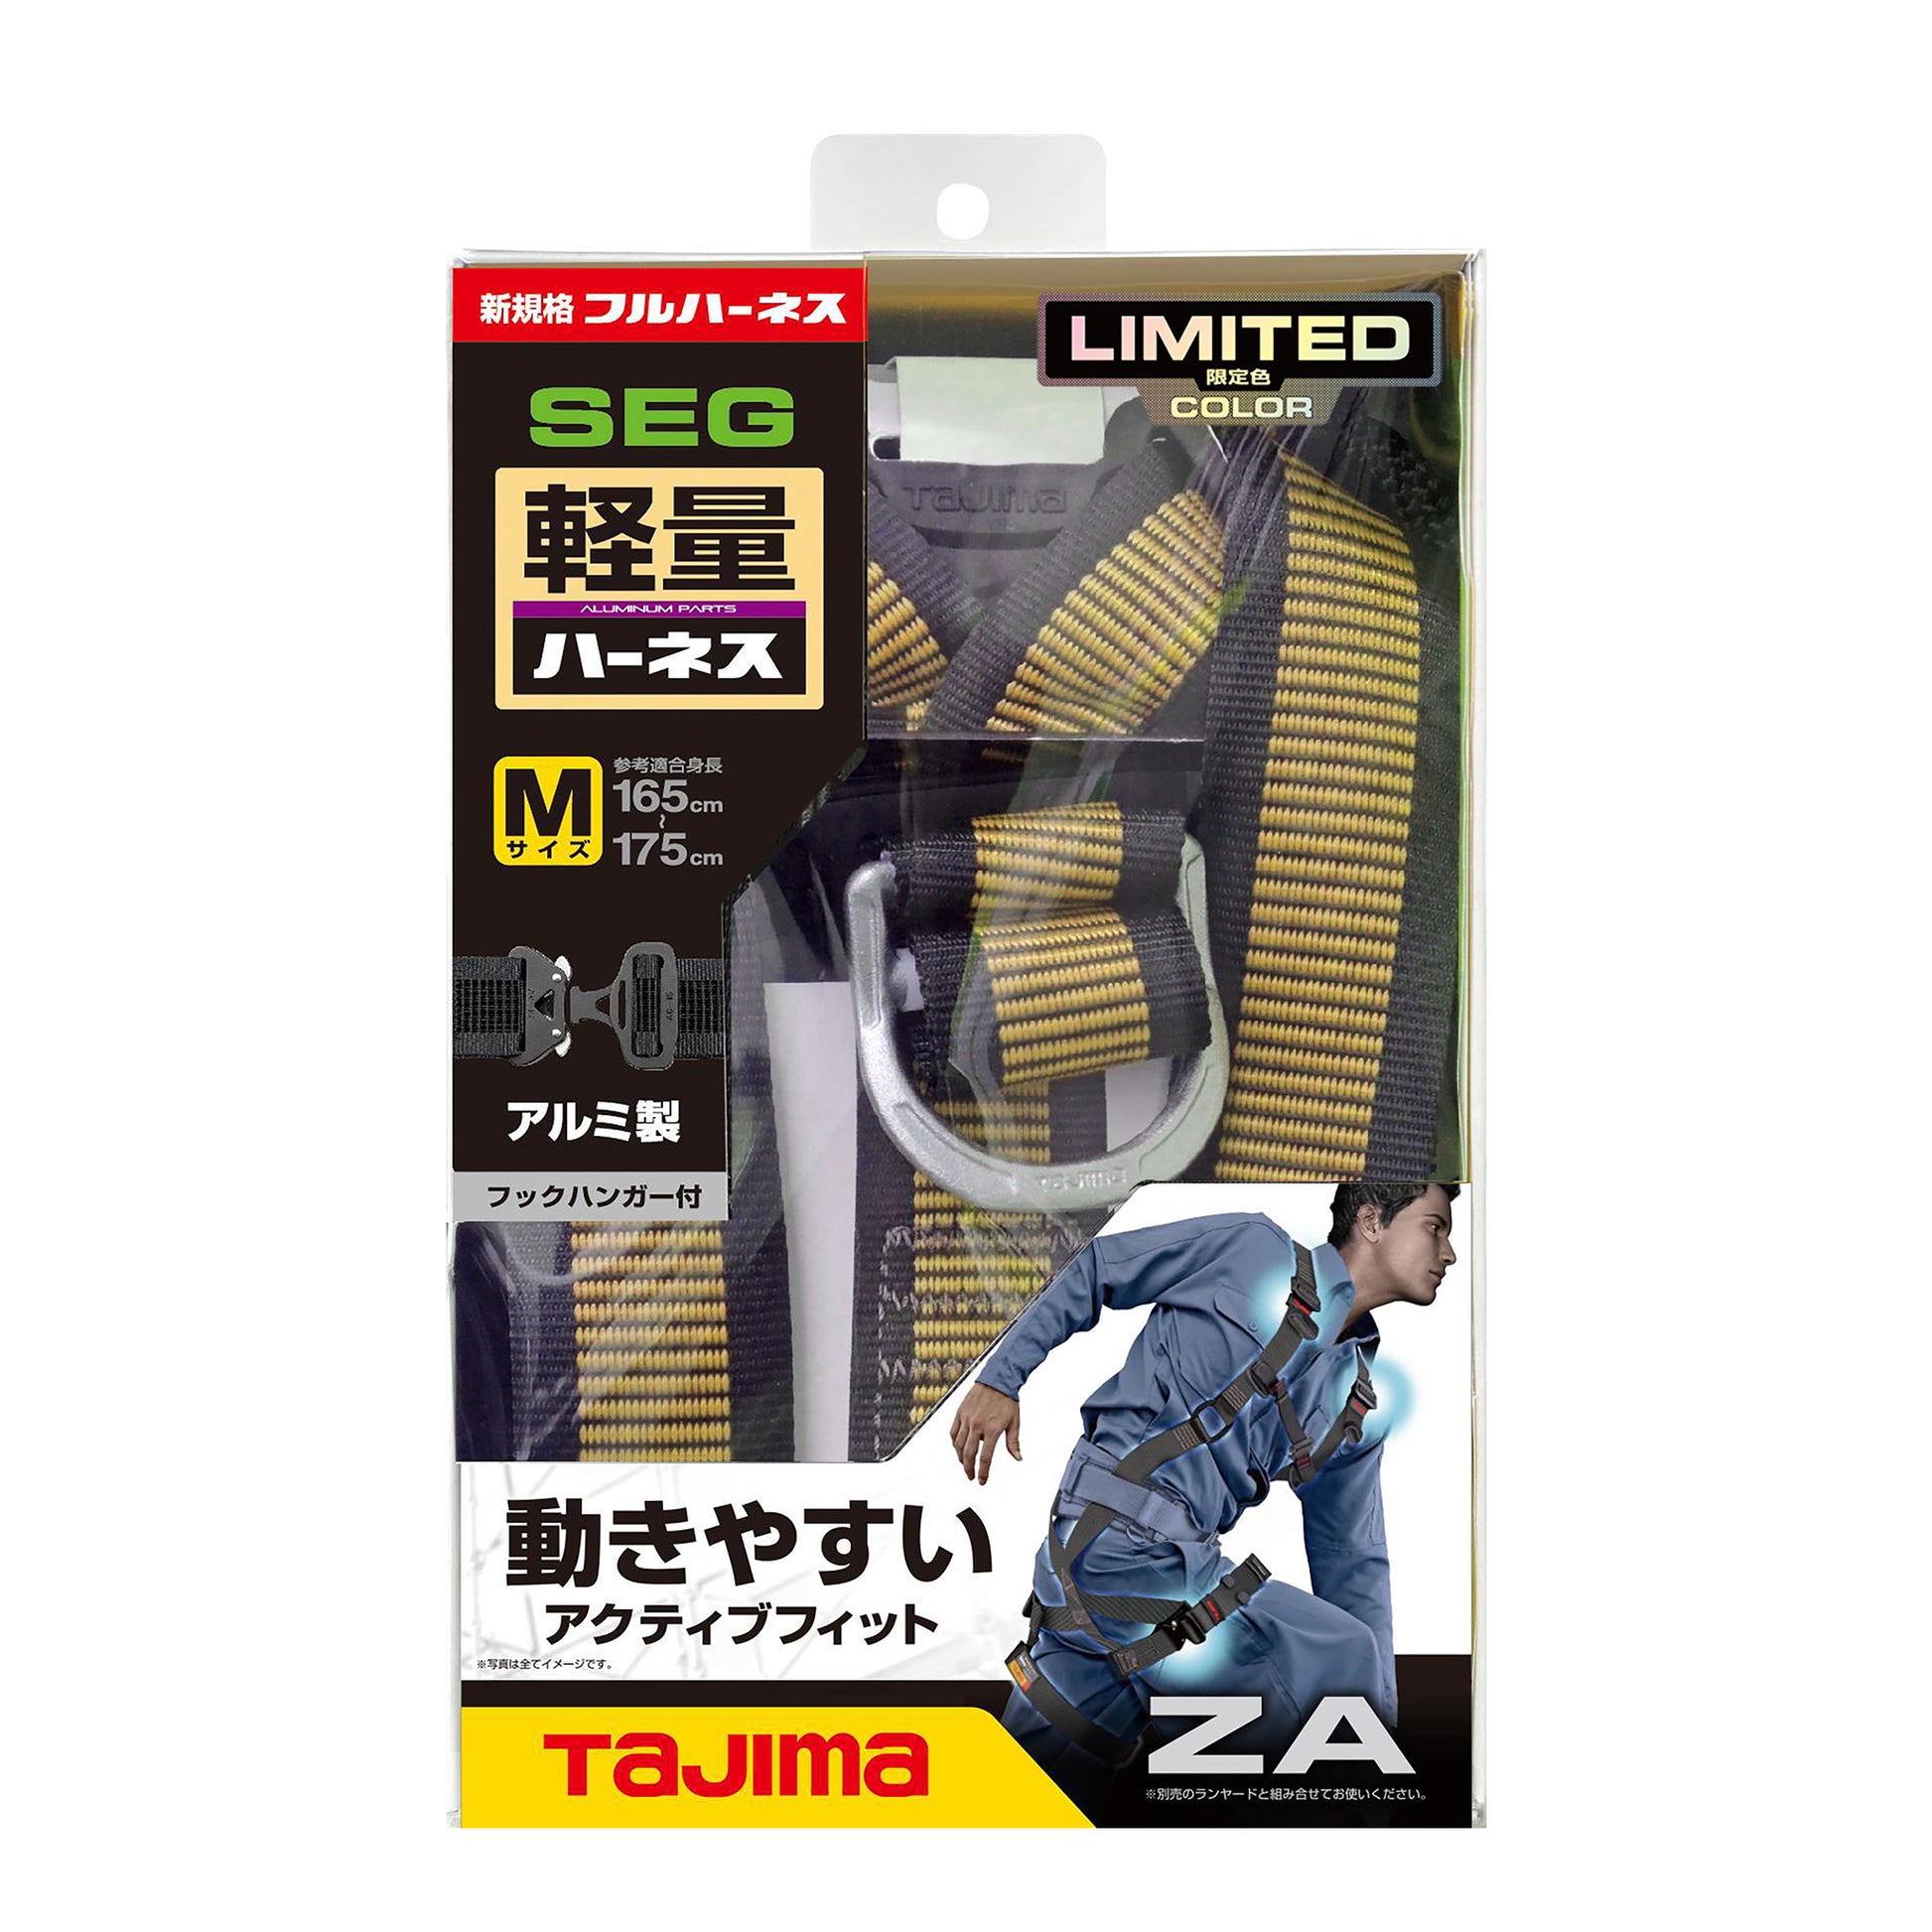 タジマ 新規格フルハーネス ZA 軽量アルミ・ワンタッチ腿バックルモデル 【限定色】-